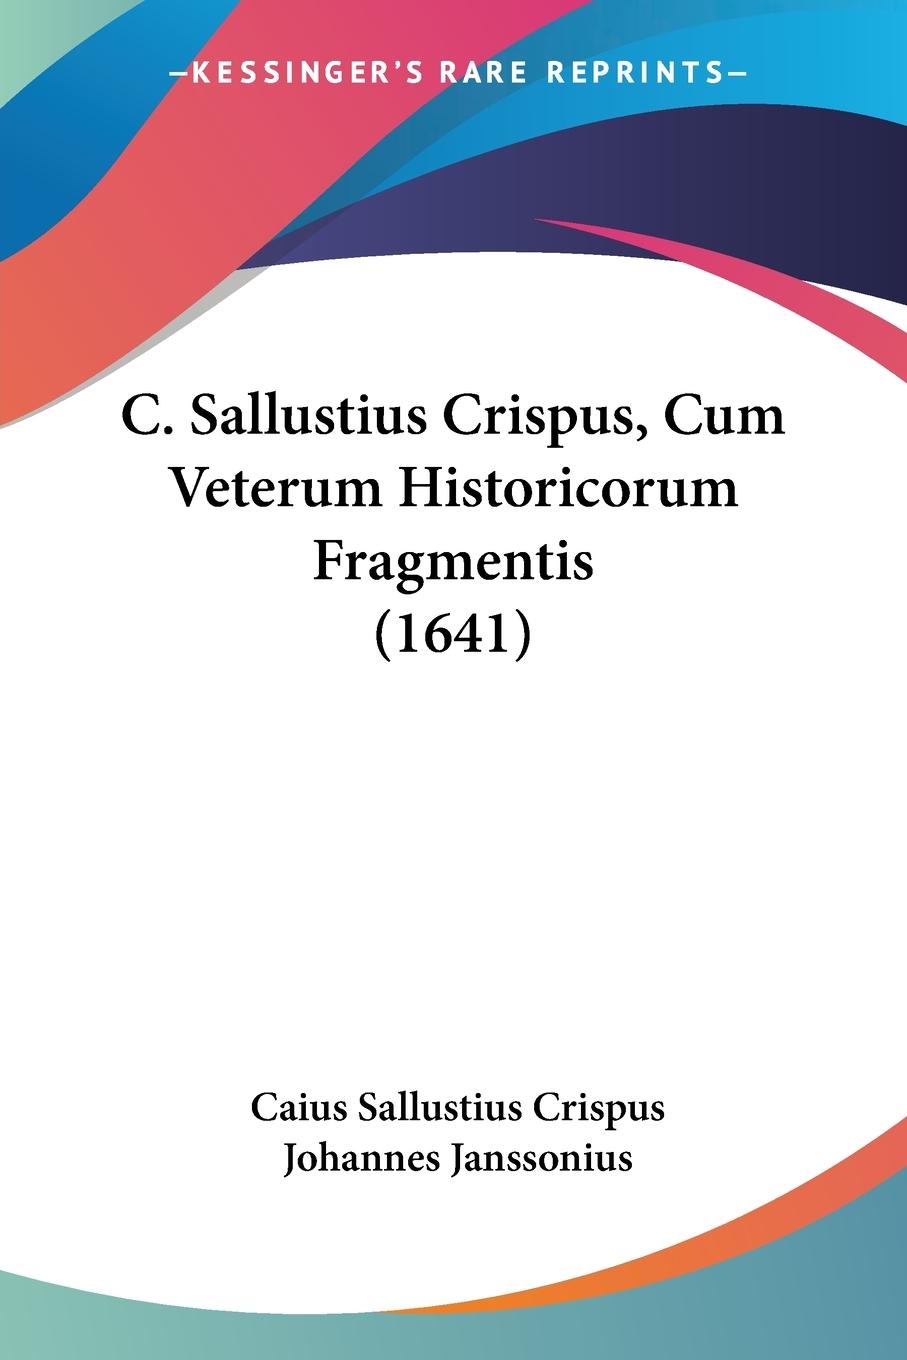 C. Sallustius Crispus, Cum Veterum Historicorum Fragmentis (1641) - Crispus, Caius Sallustius Janssonius, Johannes